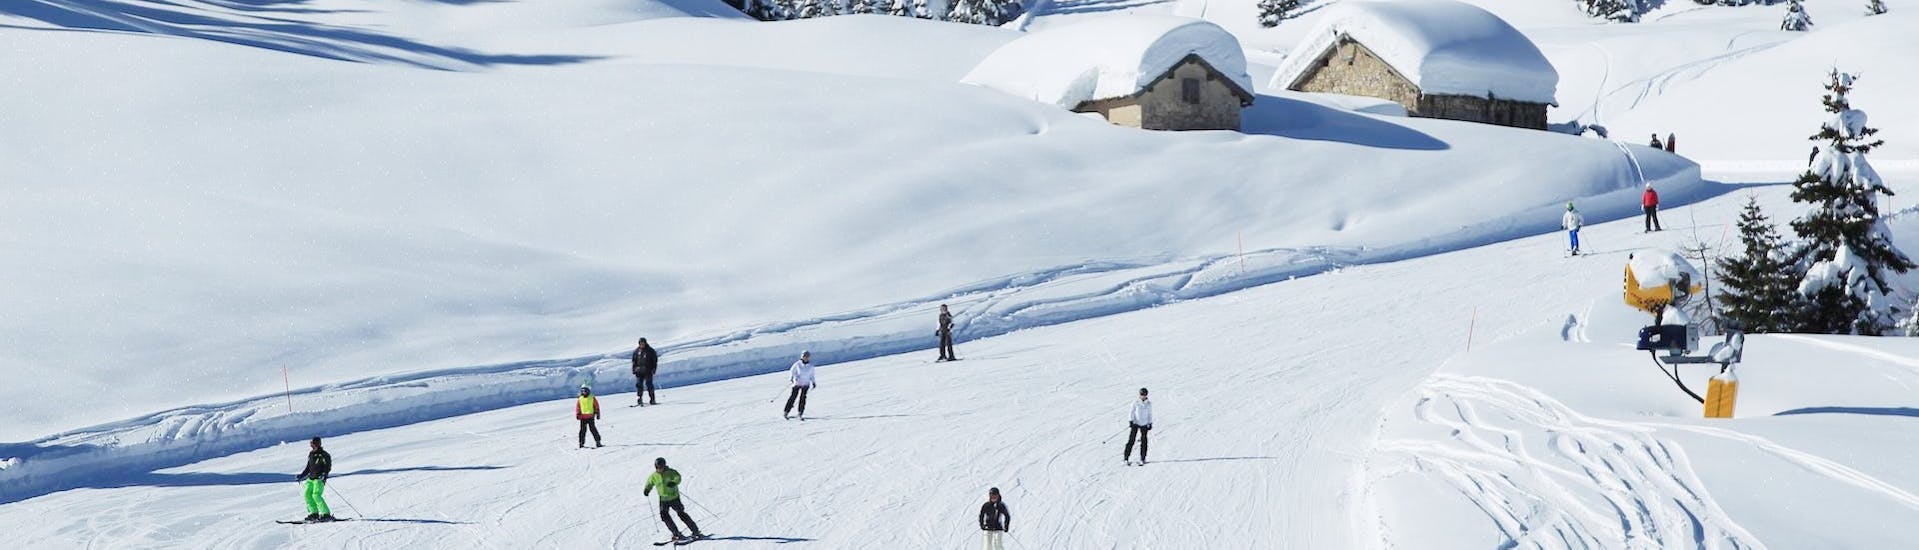 Pistes waar de privé skilessen (vanaf 4 jaar) voor kinderen van alle niveaus bij Scuola Italiana Sci Folgaria-Fondo Grande plaatsvinden.